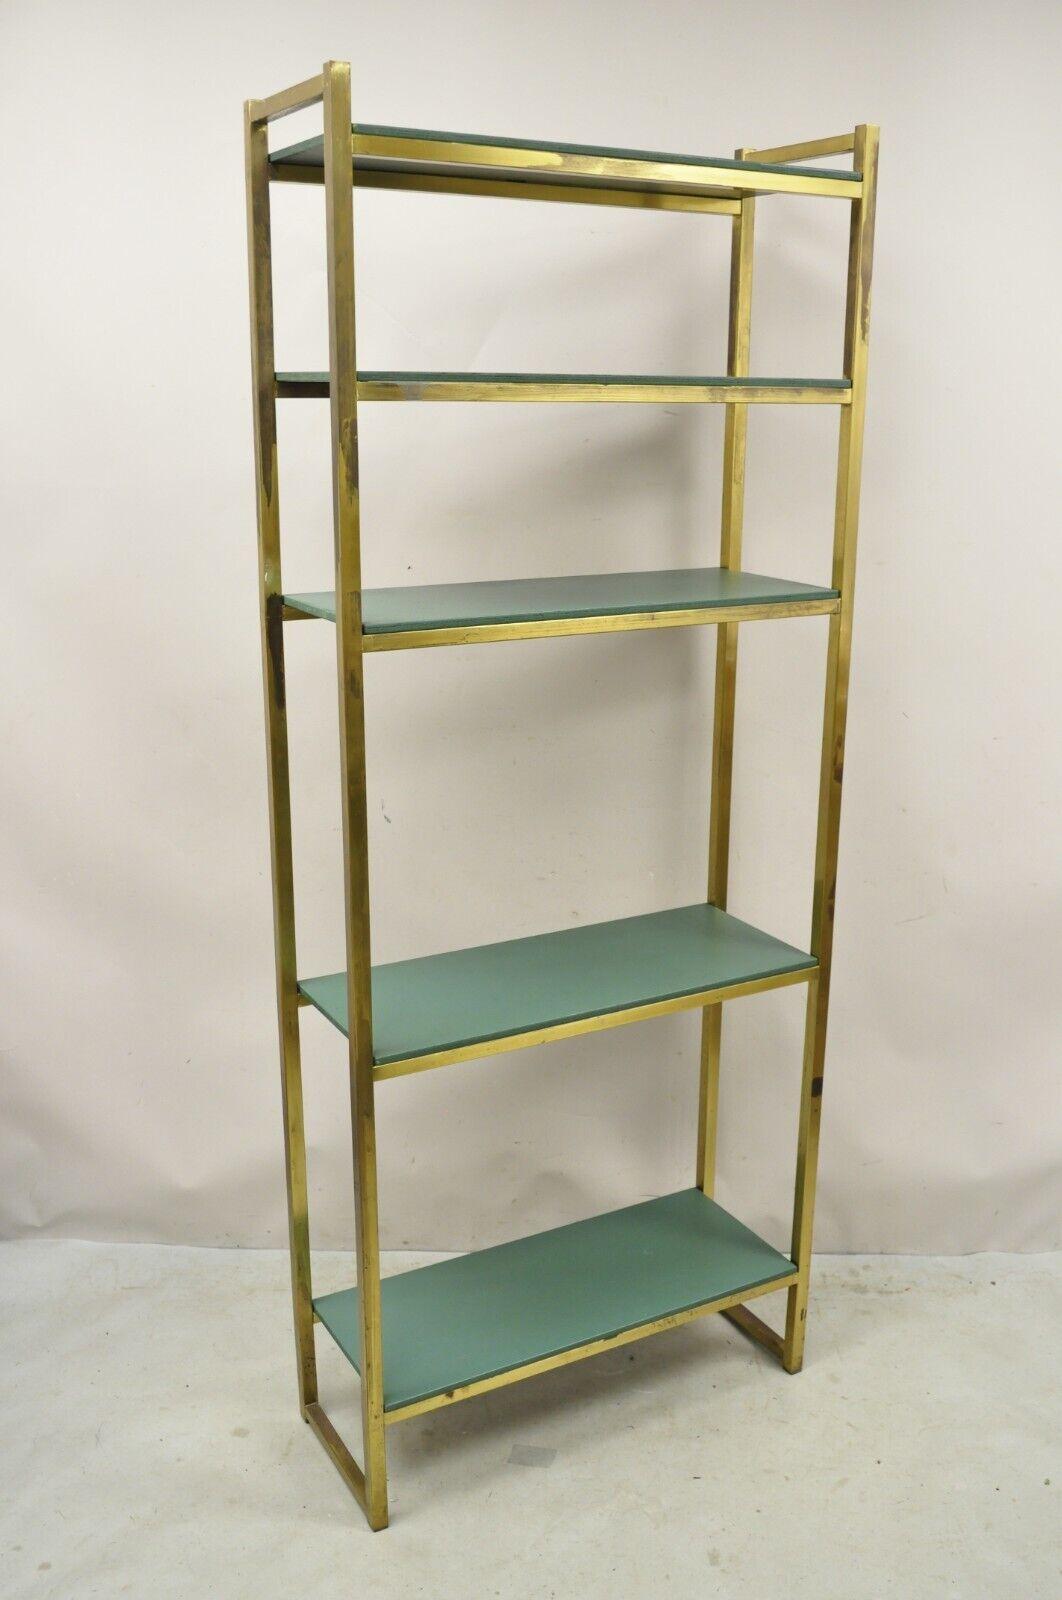 Vintage Hollywood Regency Brass Metal 5 Tier Etagere Bookcase Shelf. L'article se caractérise par un cadre en métal, une finition en laiton bruni en détresse, des étagères en bois vert, un grand style et une grande forme. Circa Late 20th Century.